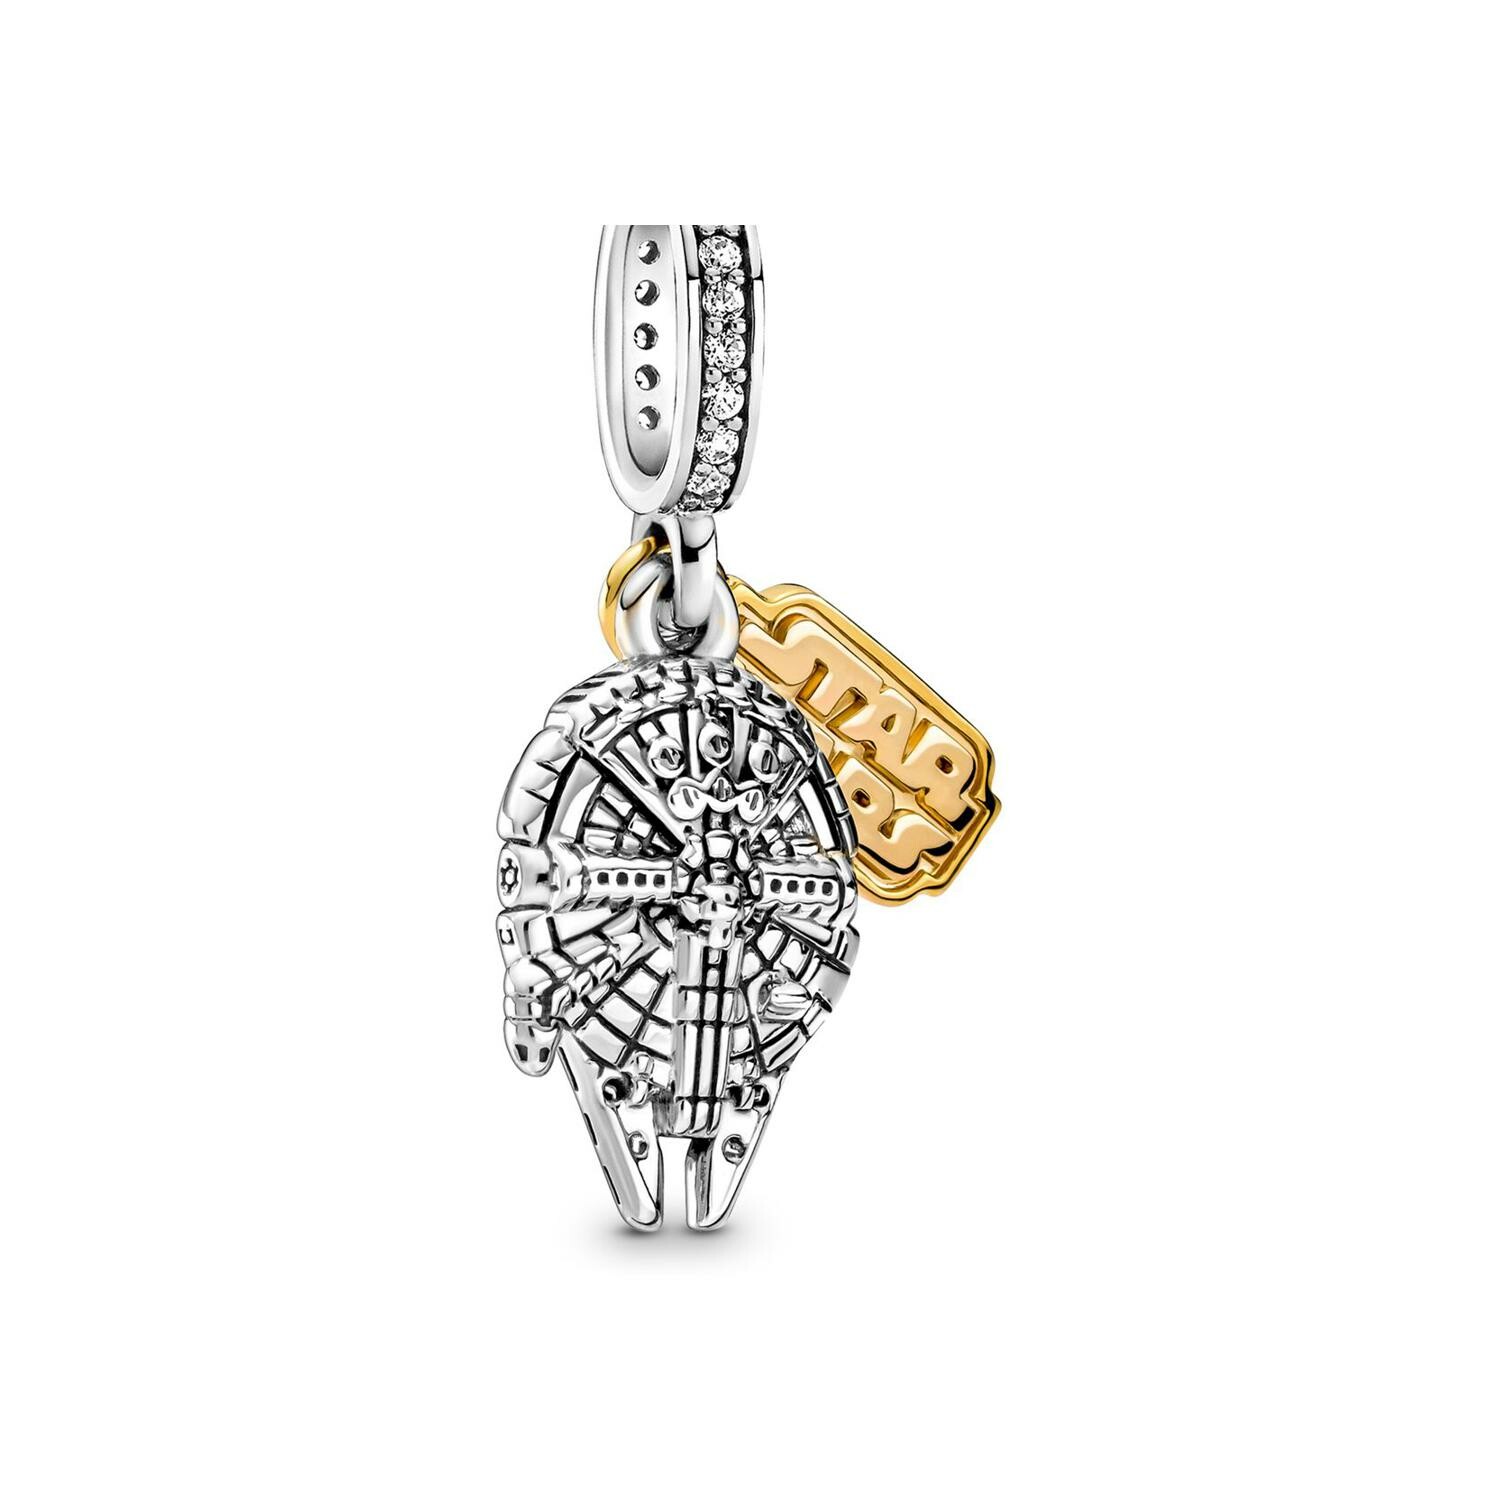 Achat Charm Pandora avec pendentif Star Wars Faucon Millenium en argent et  métal doré, oxyde de zirconium